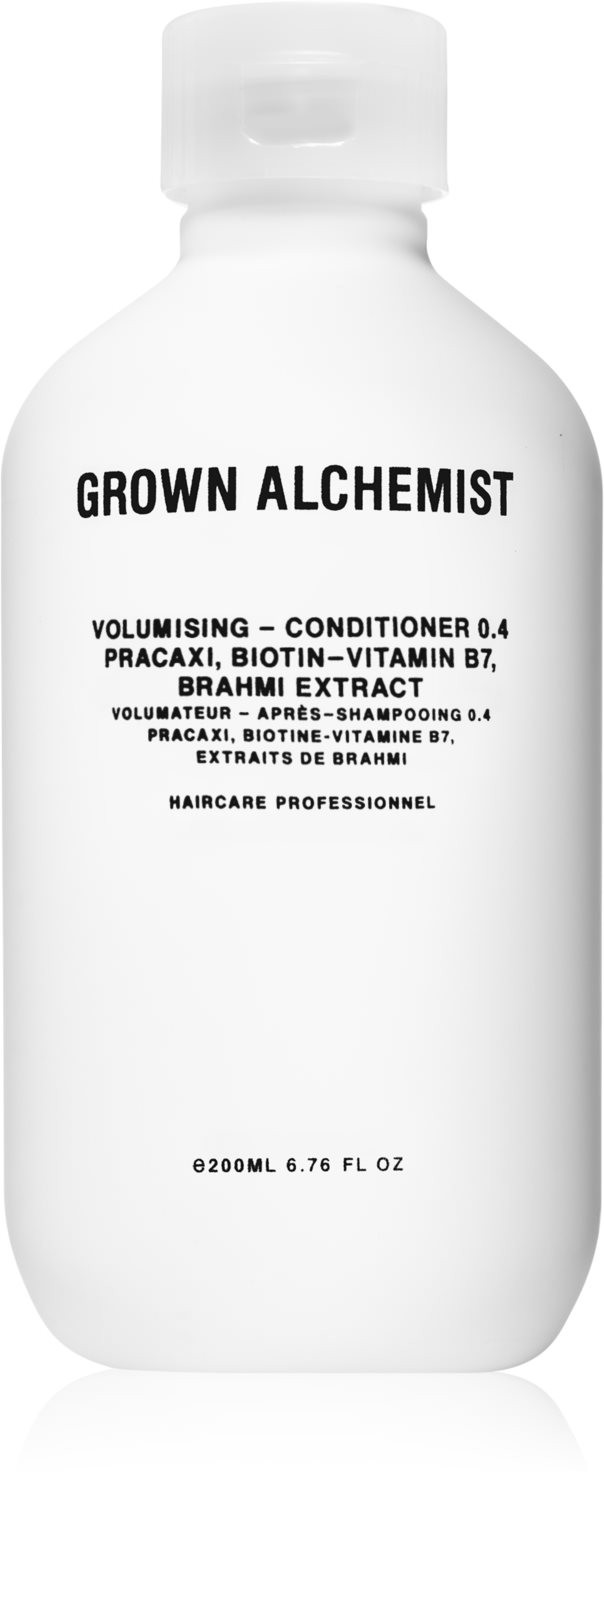 Grown Alchemist Volumising Shampoo 0.4, £21.00